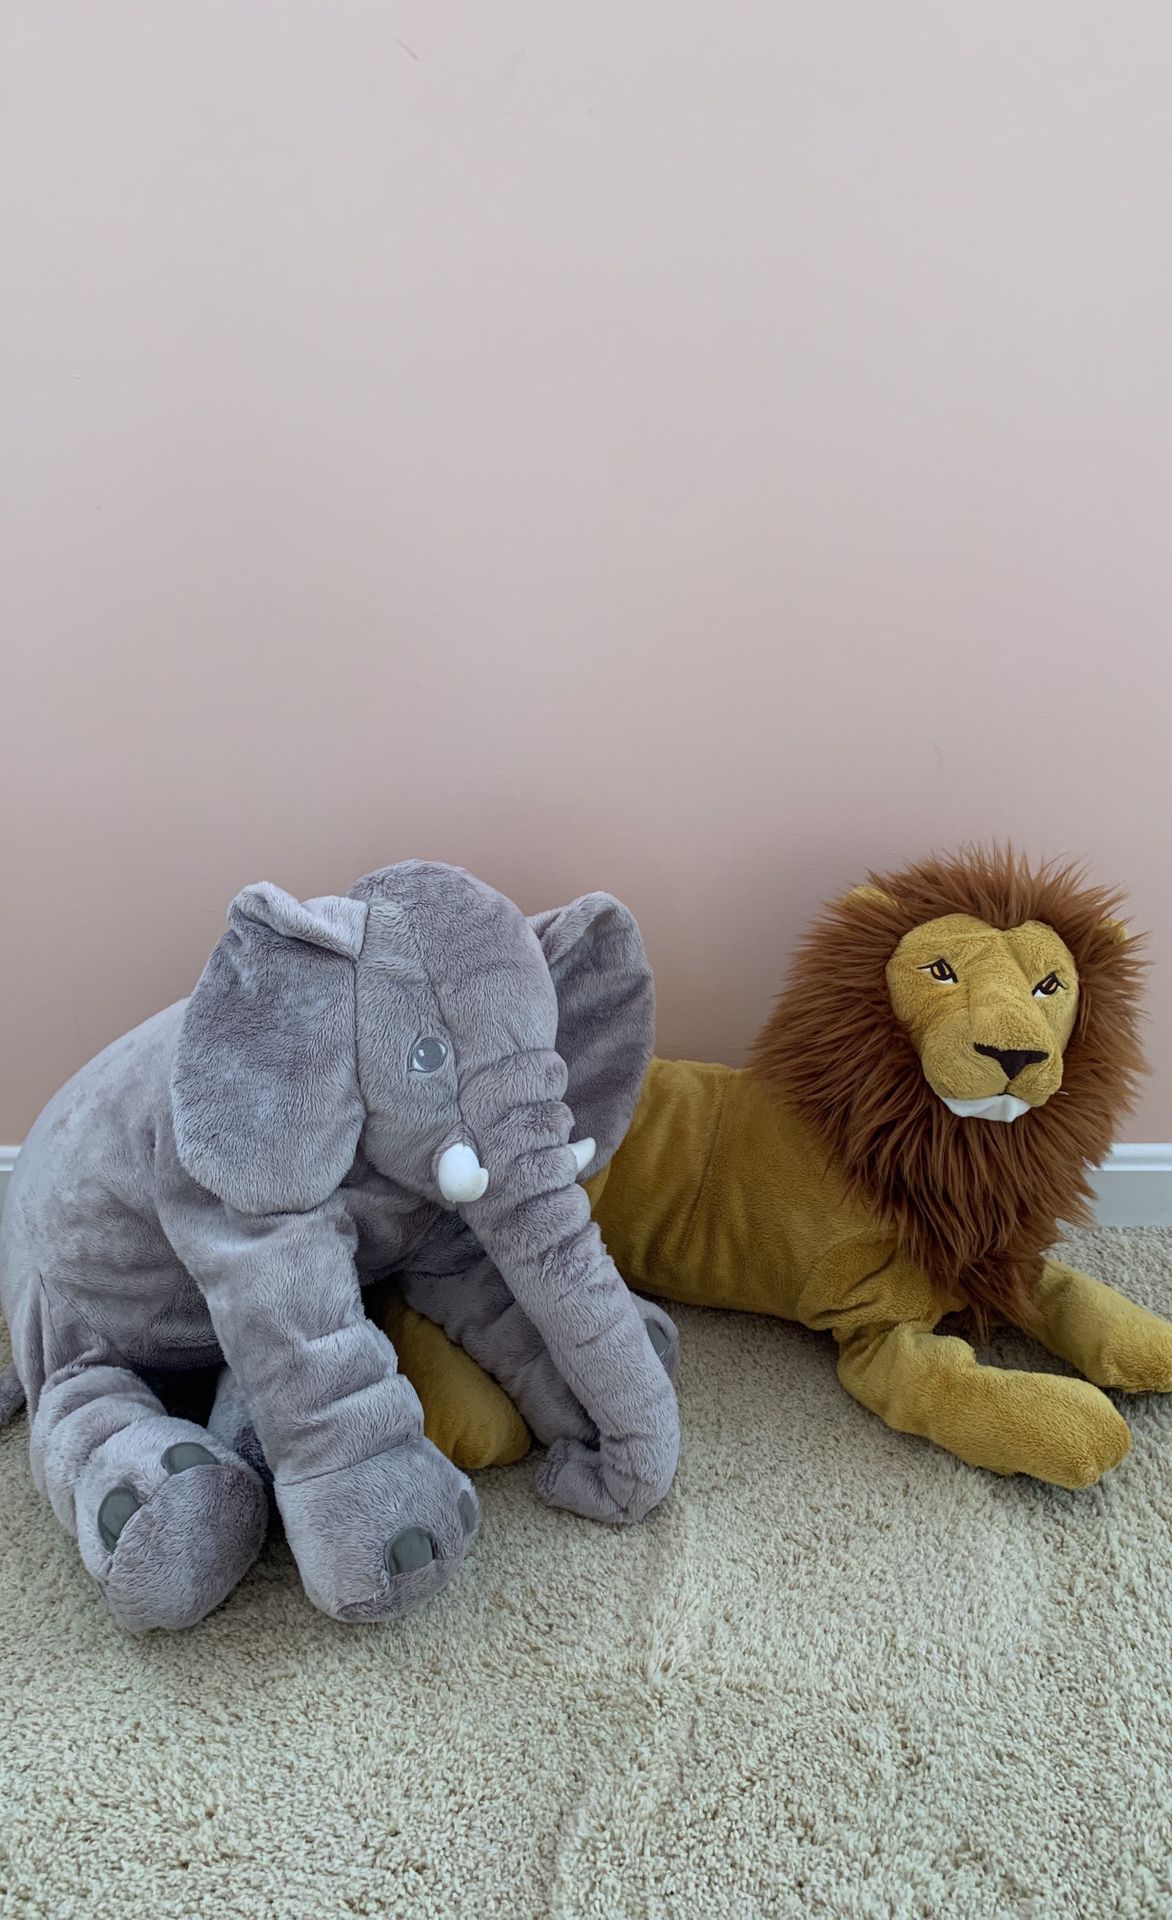 Stuffed Elephant and Lion